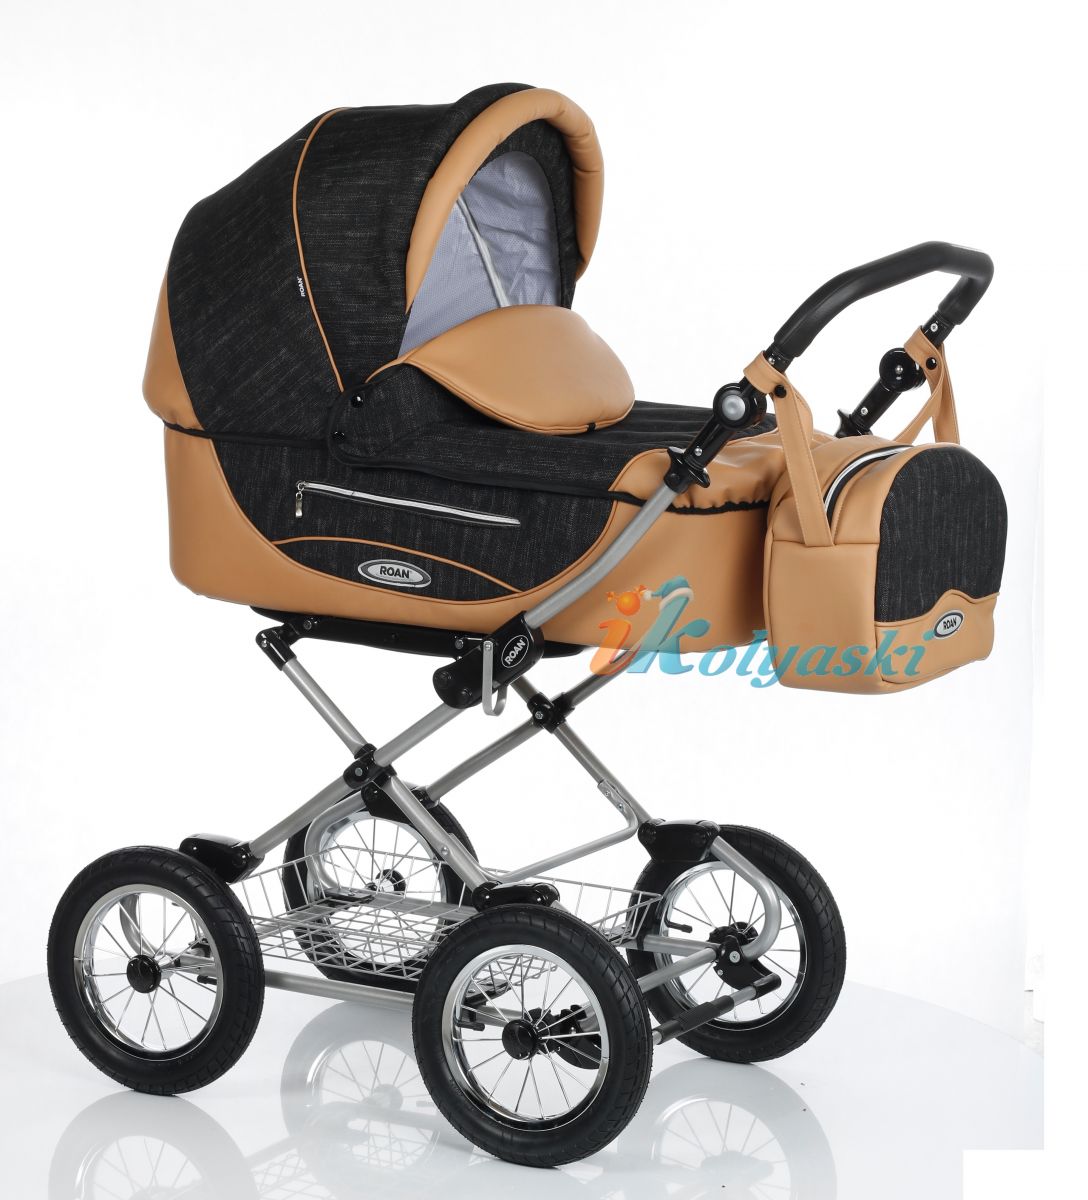 Детская коляска Roan Kortina Luxe Роан Кортина люкс 2018 спальная люлька 3 в 1 , коляска для новорожденных, коляска зима-лето